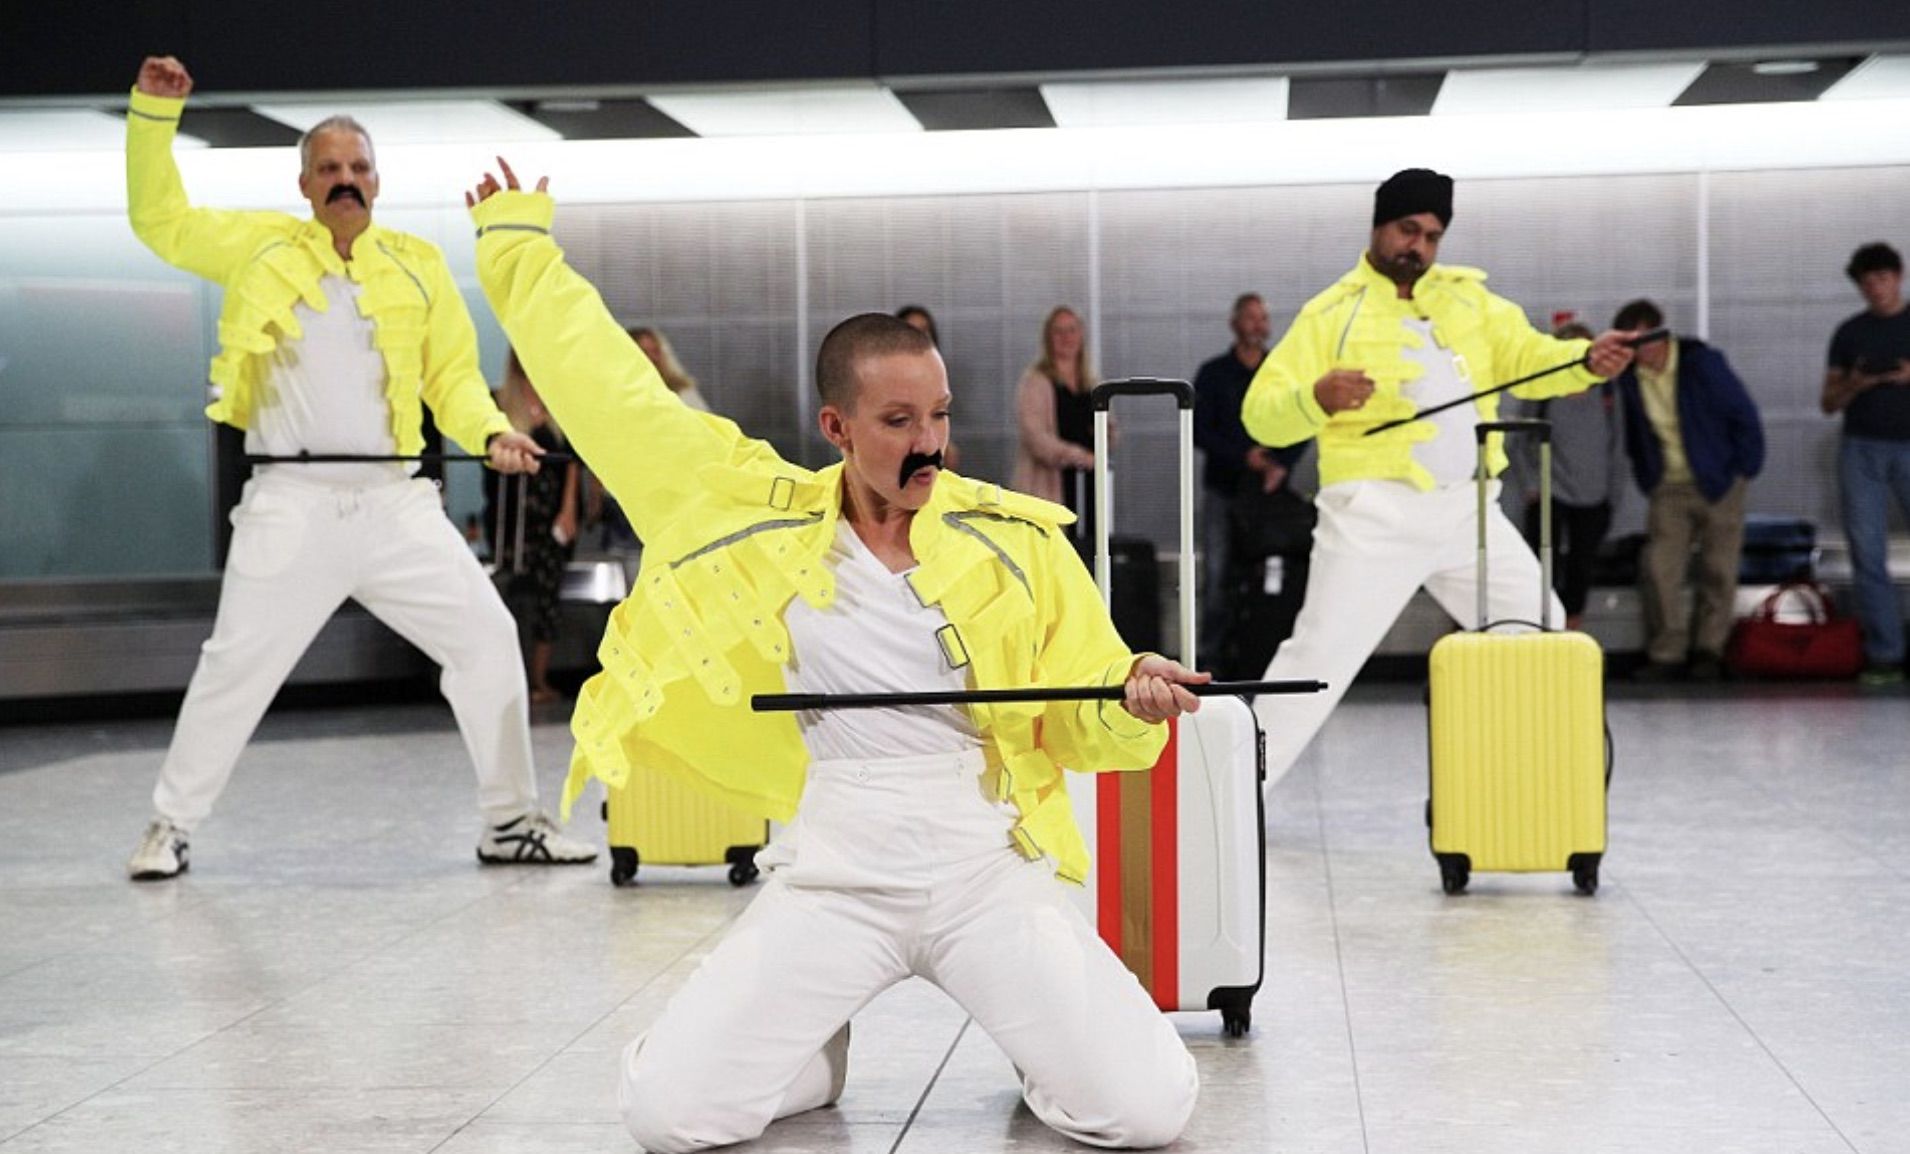 Baggage handlers at Heathrow in London celebrating Freddie Mercury